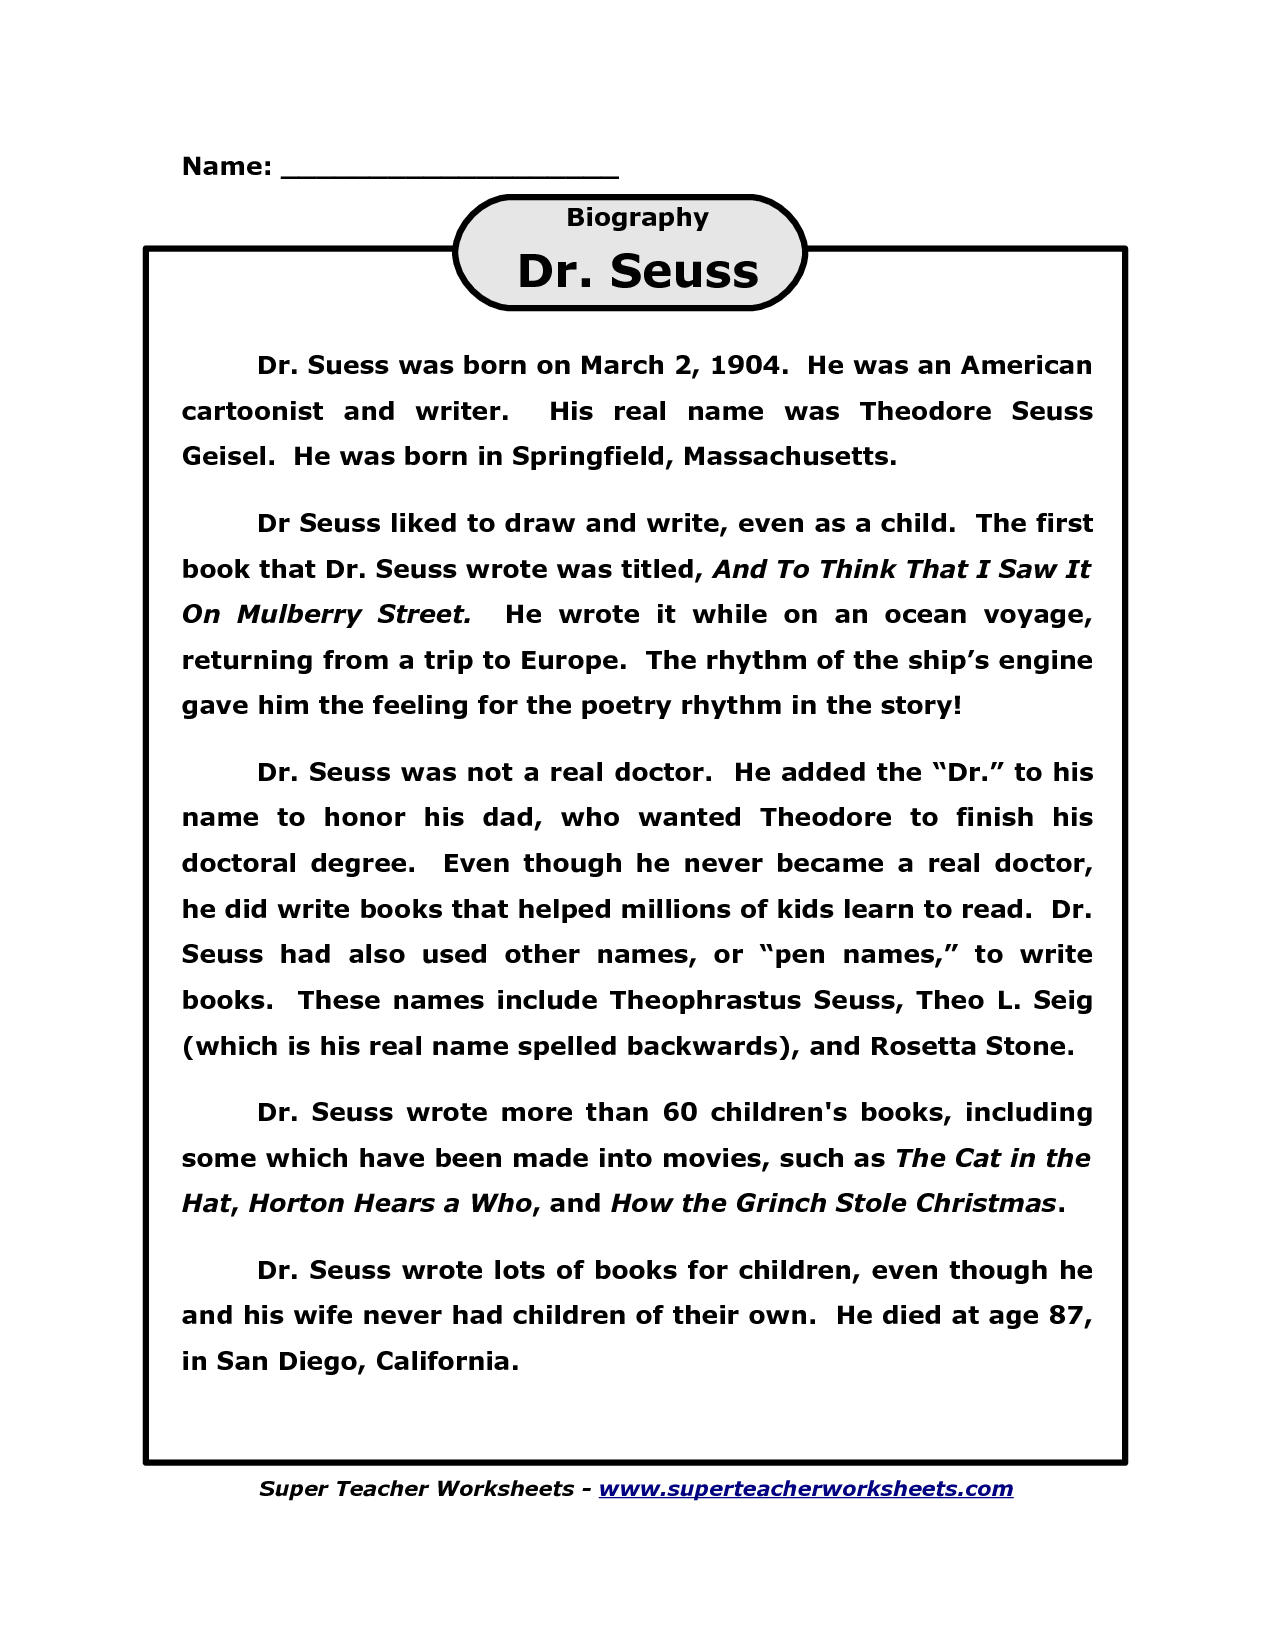 Dr. Seuss Biography Worksheet for Kids